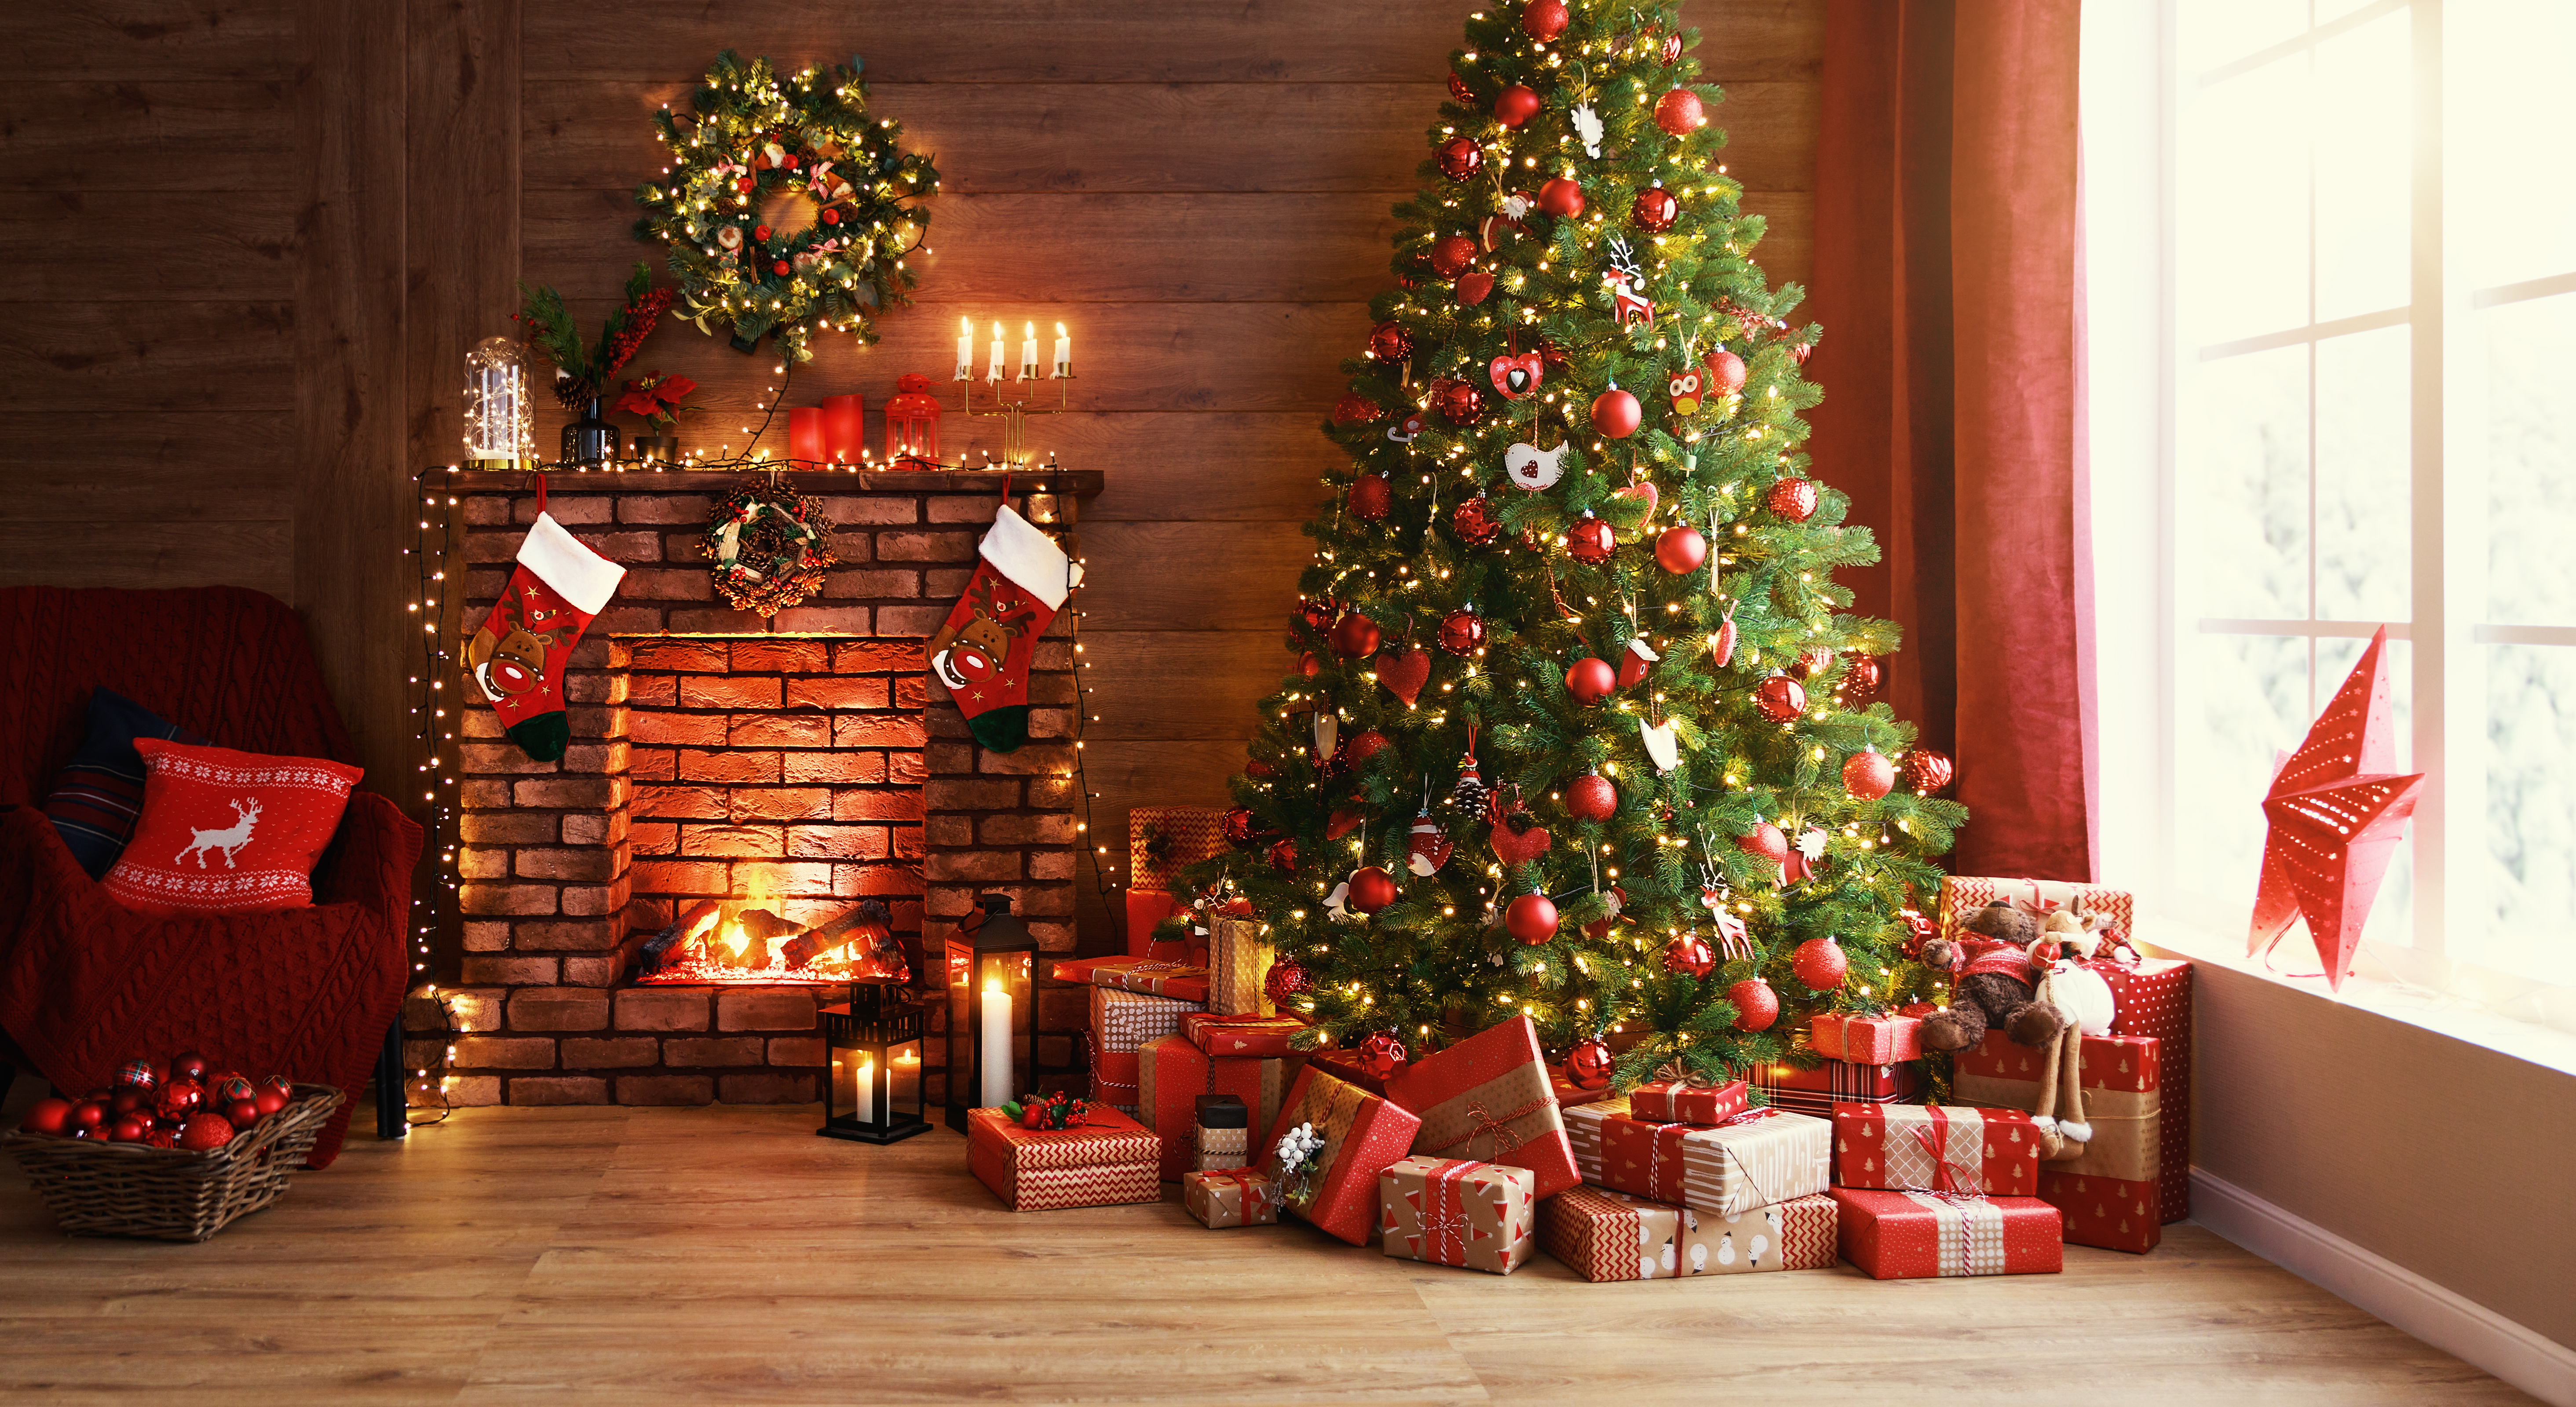 Un árbol de Navidad colocado junto a una chimenea con regalos y adornos | Foto: Shutterstock